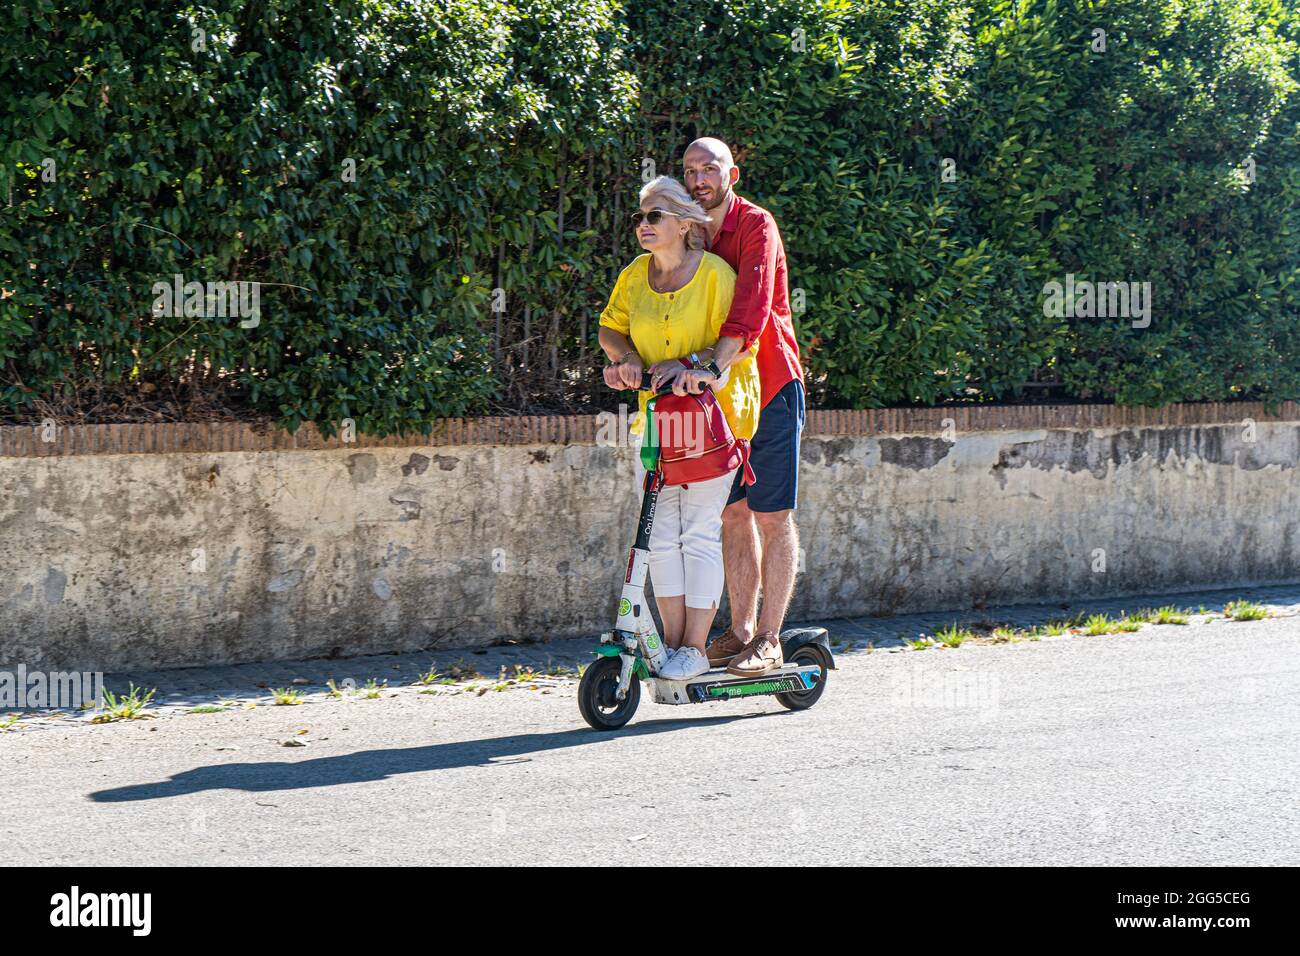 ROME ITALIE, ROYAUME-UNI. 29 août 2021. Un homme et une femme qui voyagent  ensemble à la Villa Borghese sur un scooter électrique Lime lors d'une  journée chaude à Rome. Les scooters électriques